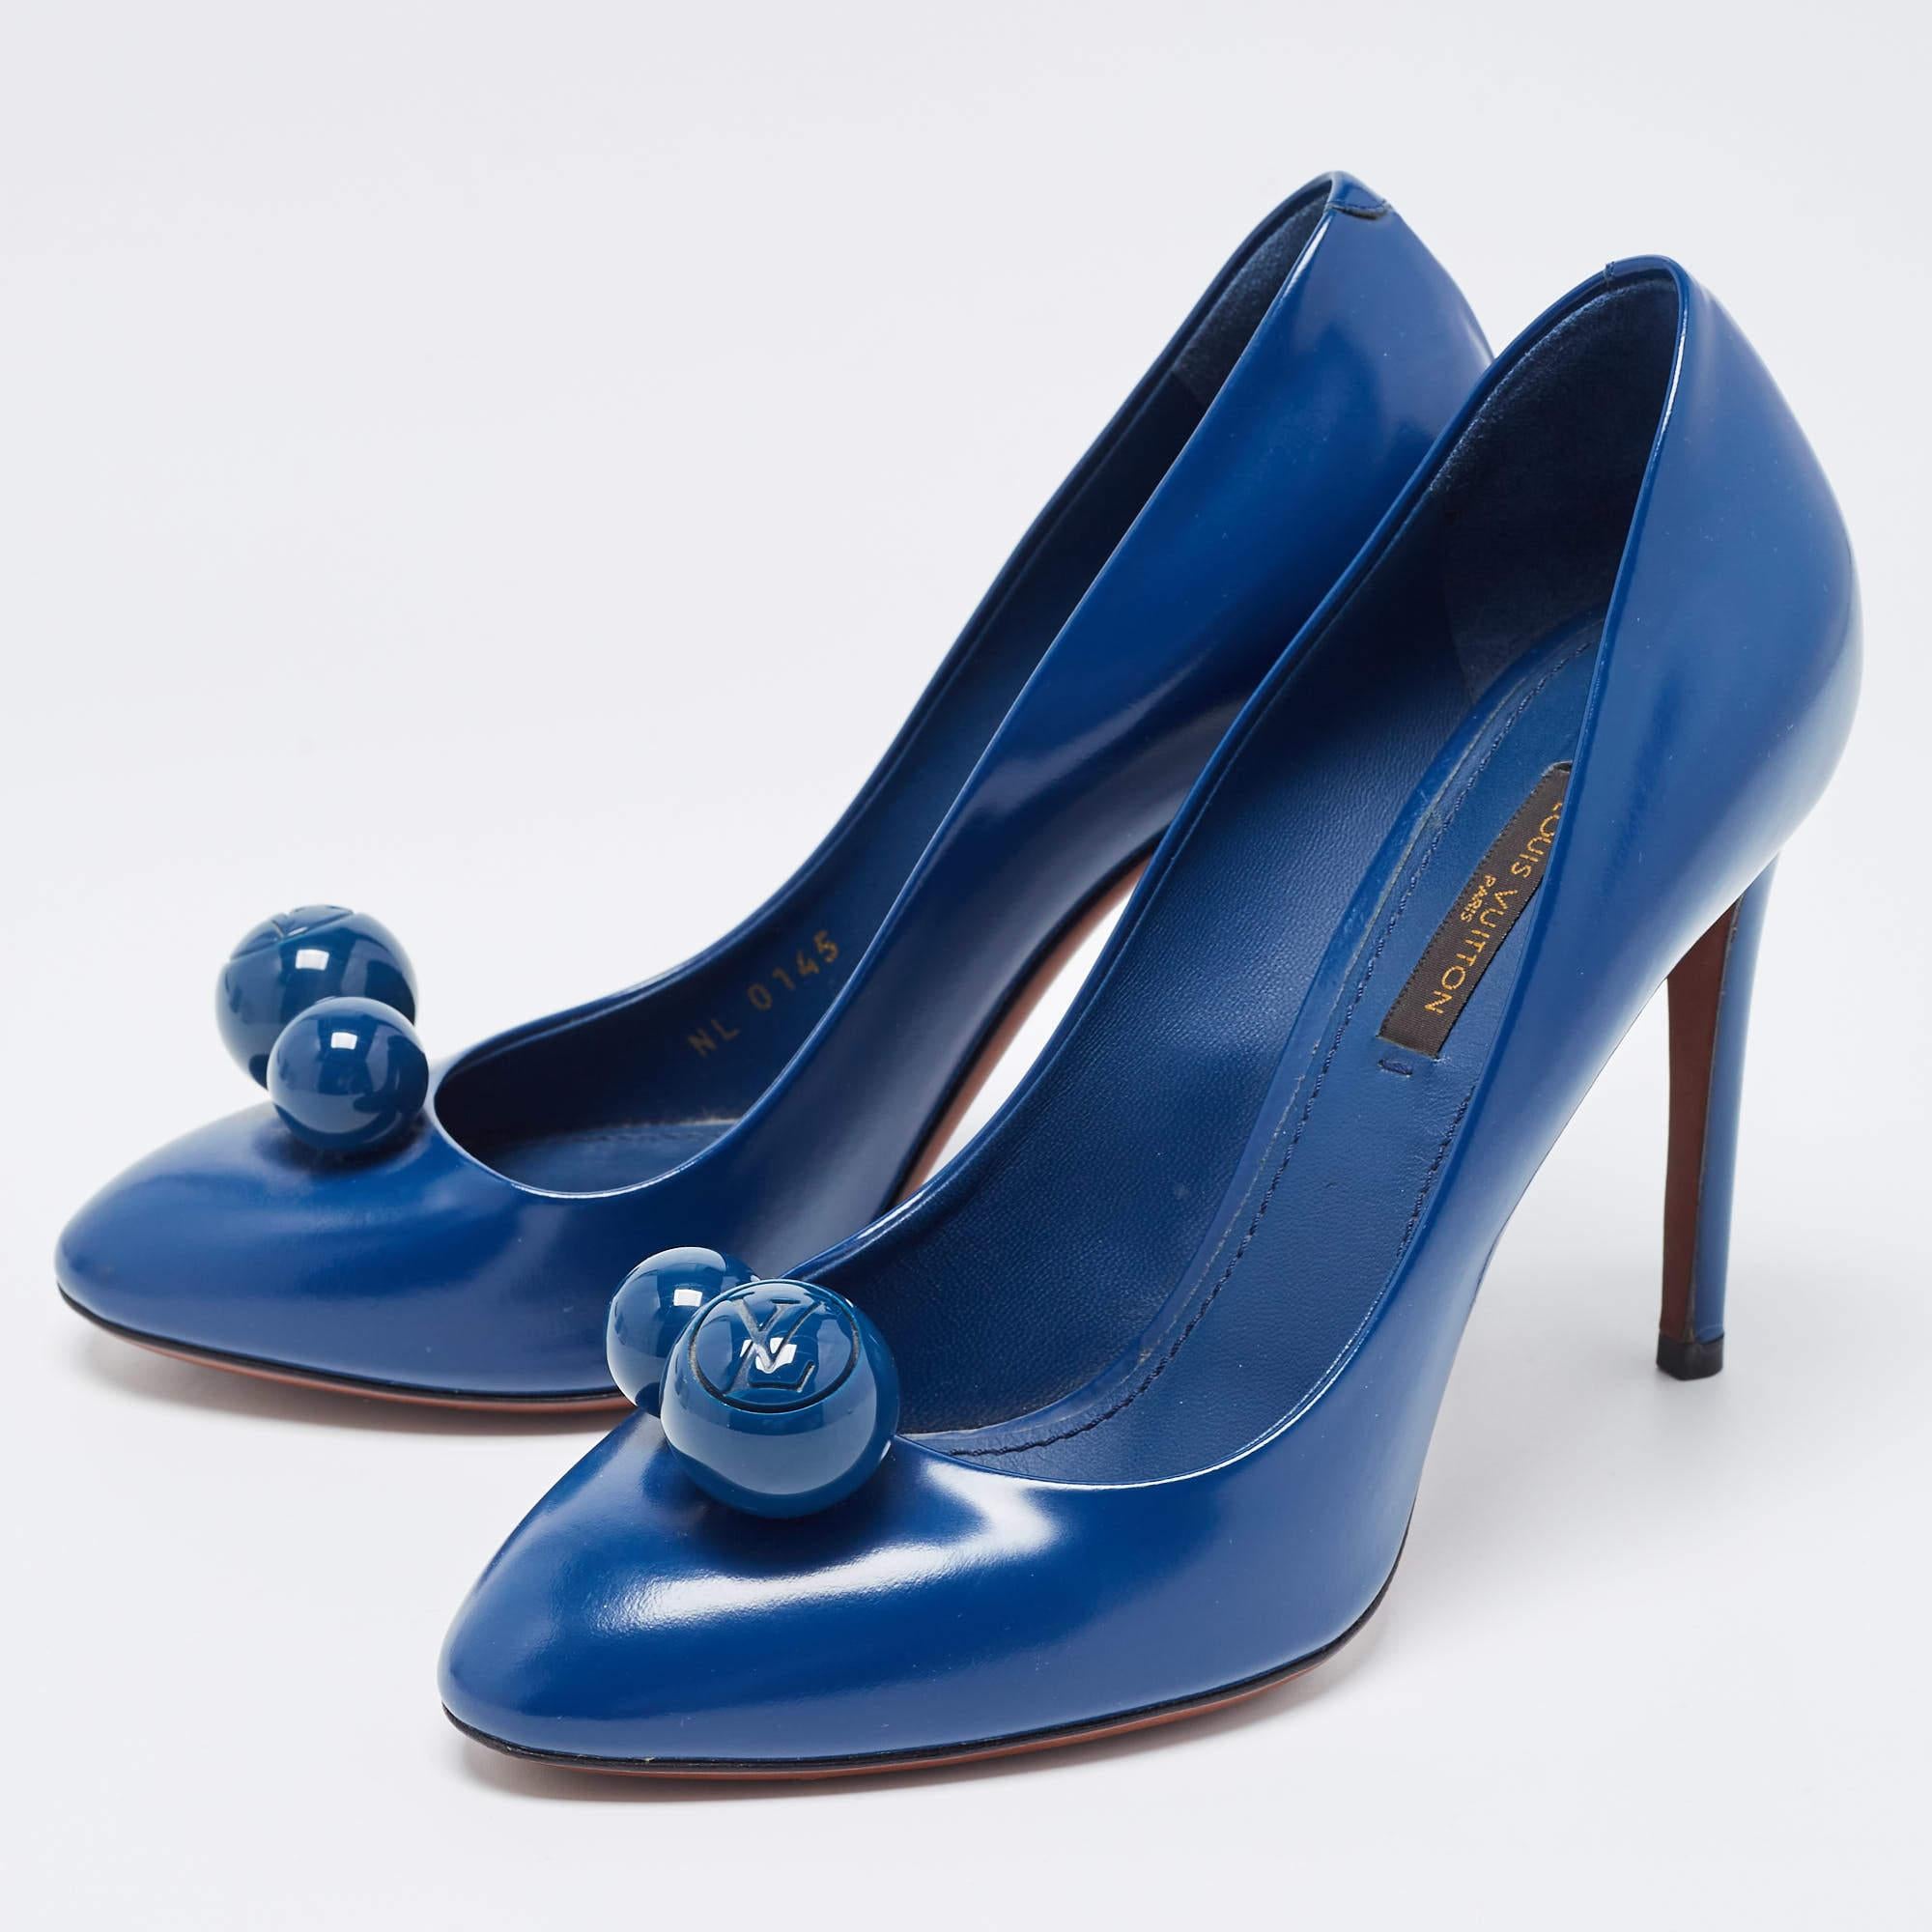 Women's Louis Vuitton Blue Leather Dice Pumps Size 37